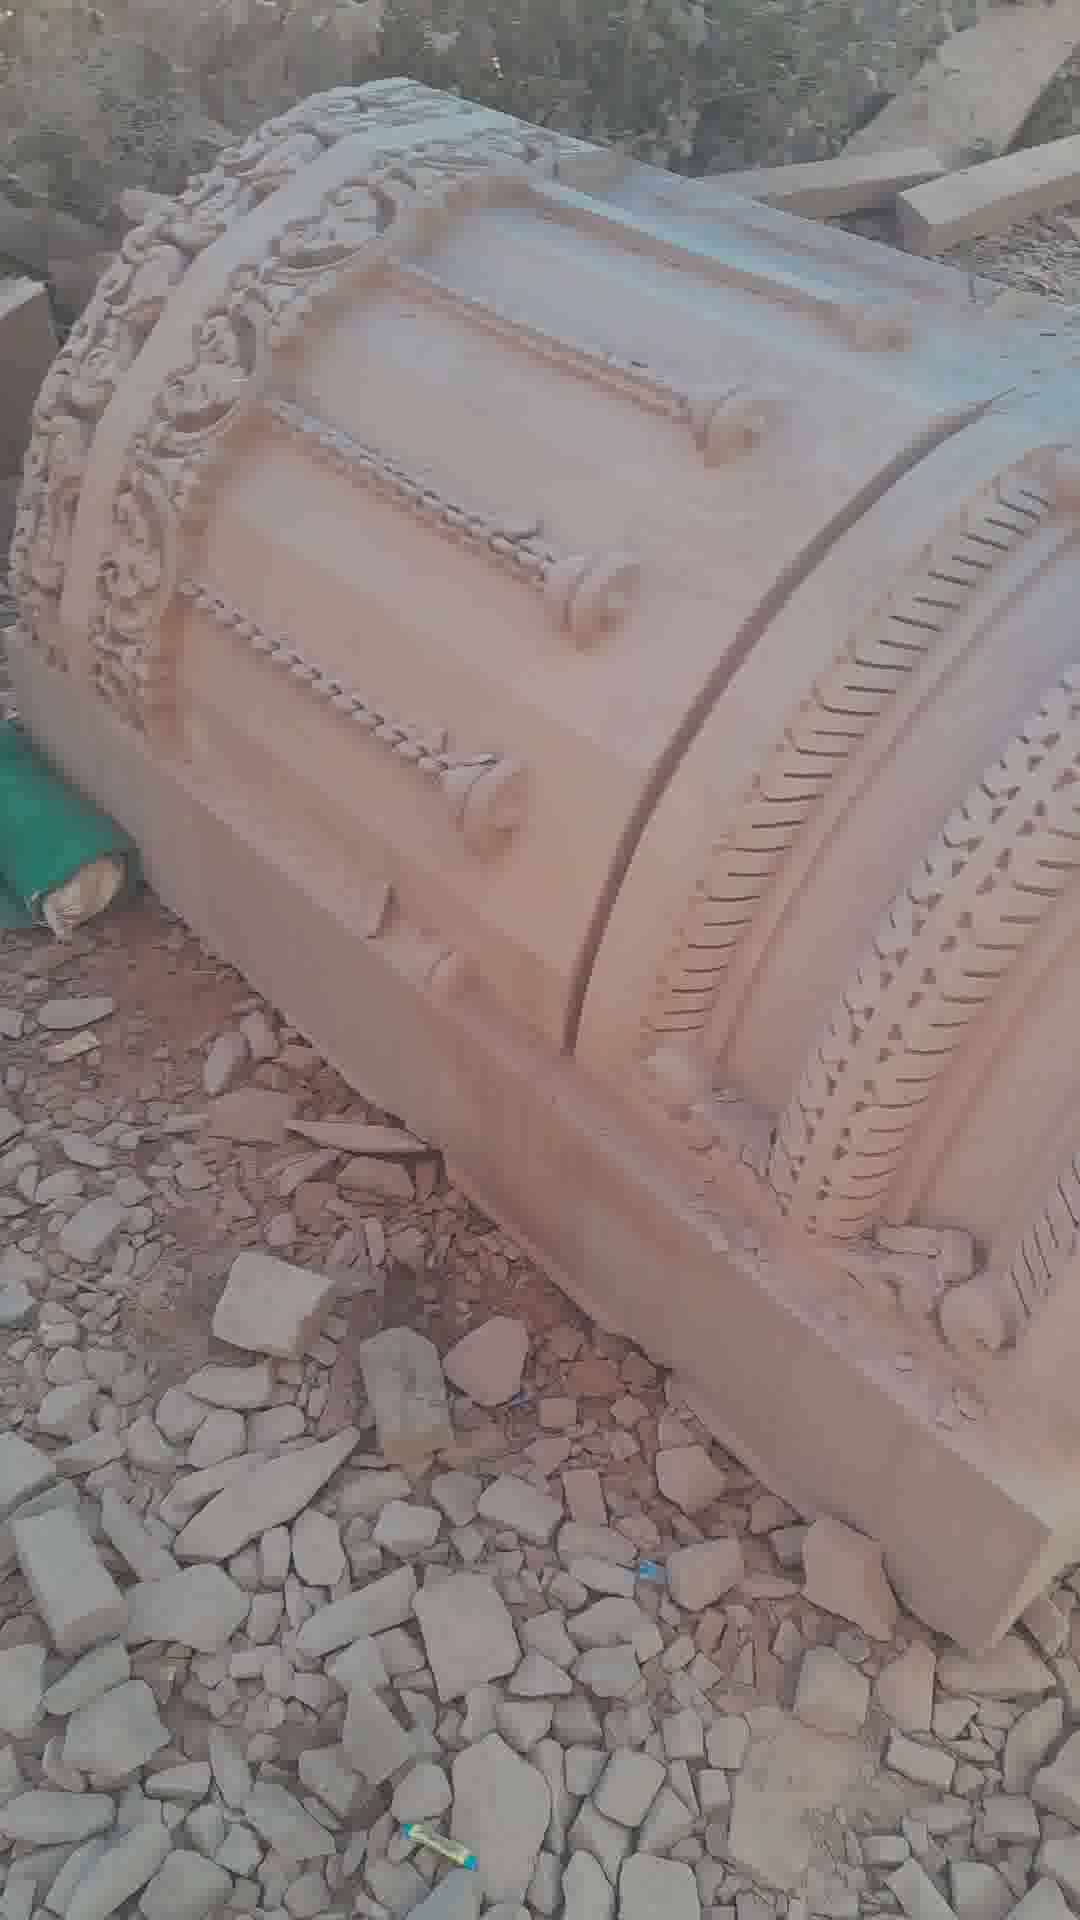 Pillar carving work